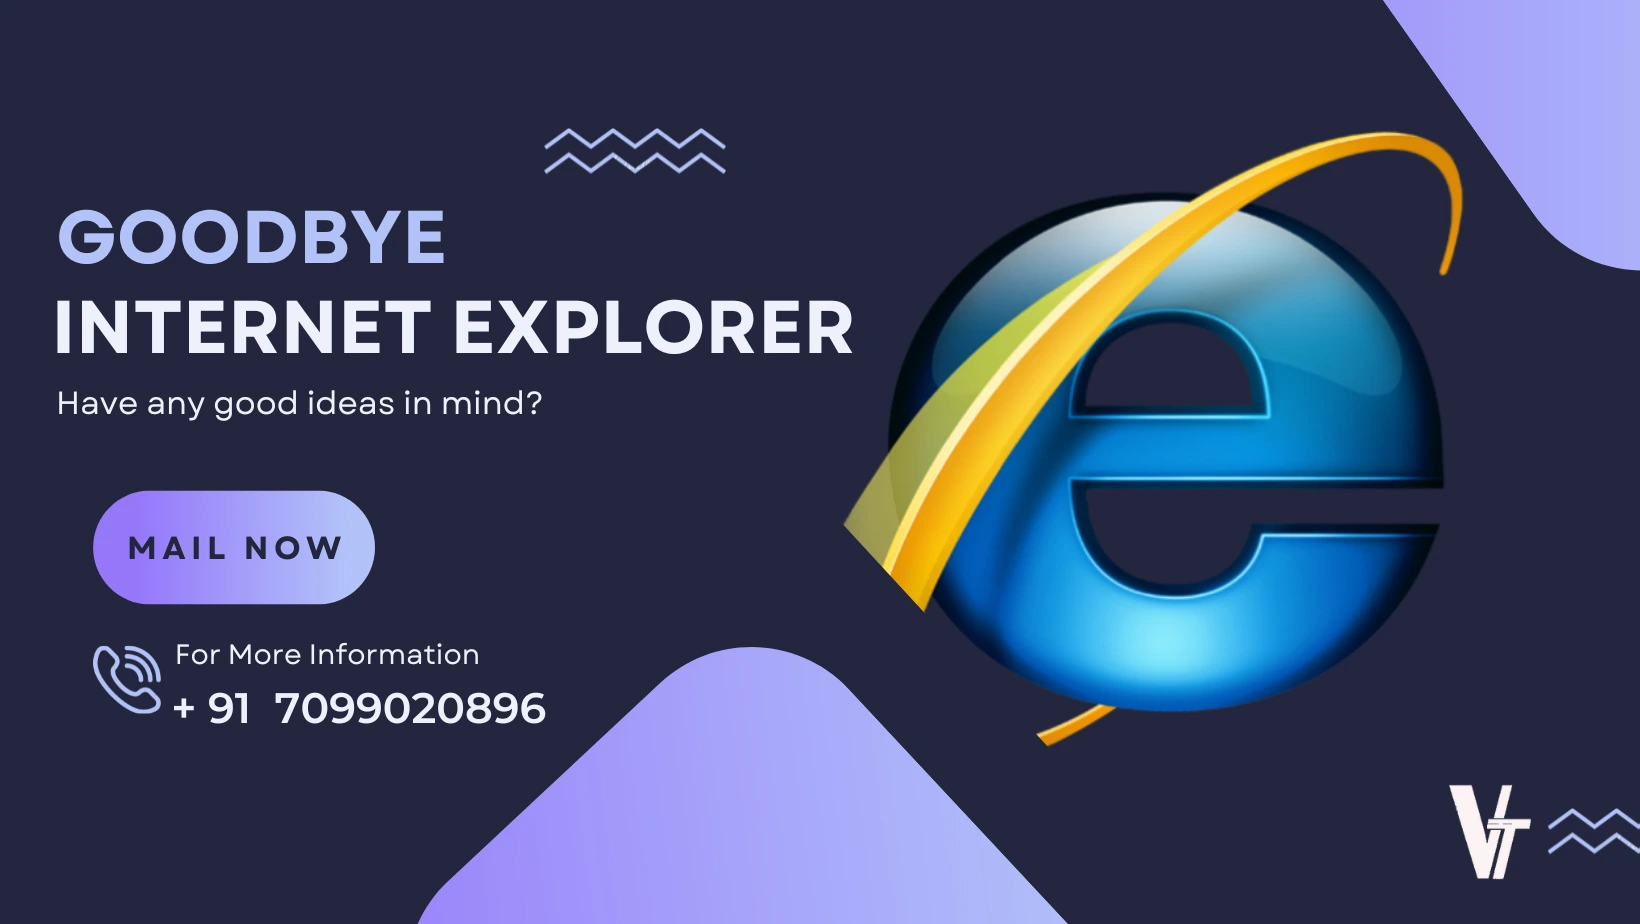 Internet explorer , microsoft edge, edge, alexa, alexa internet, Guwahati,assam , India